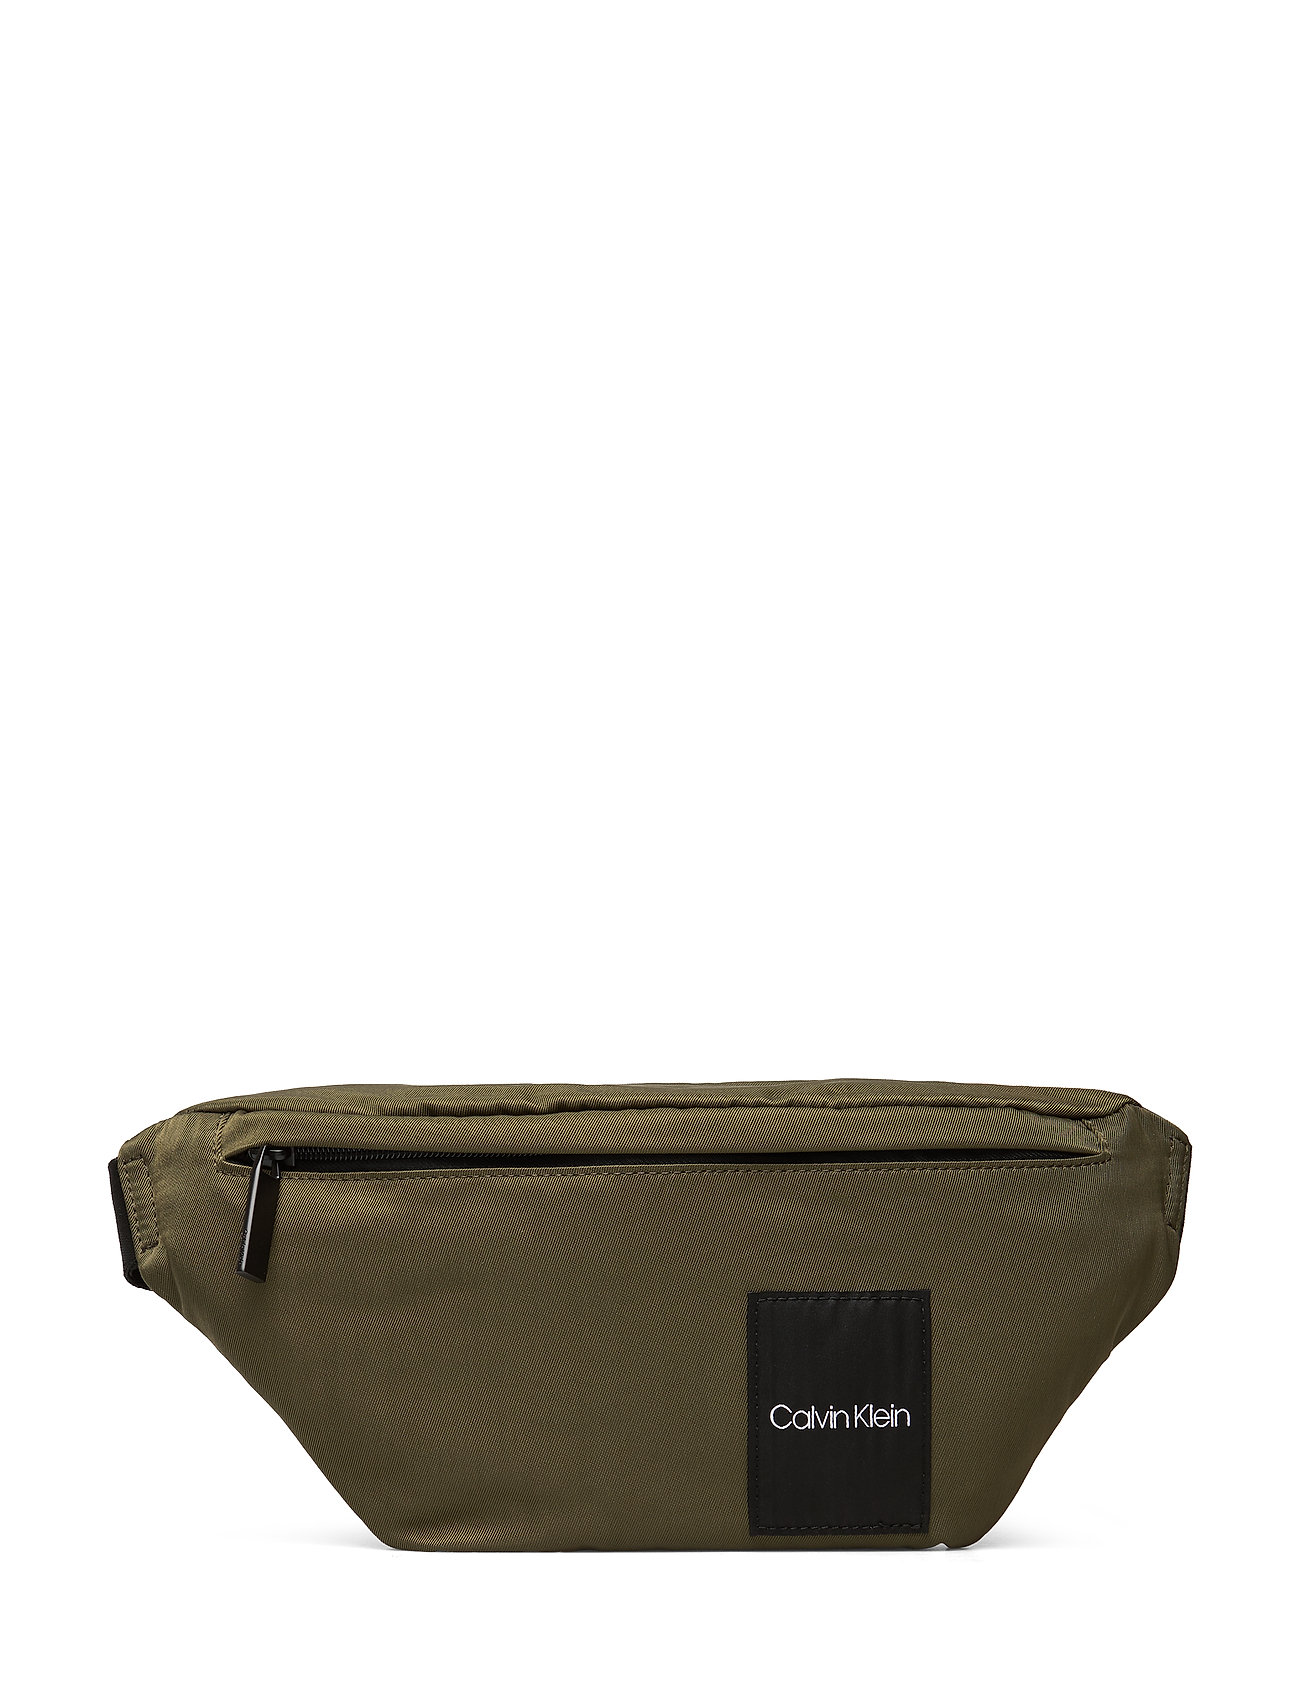 calvin klein waist bag